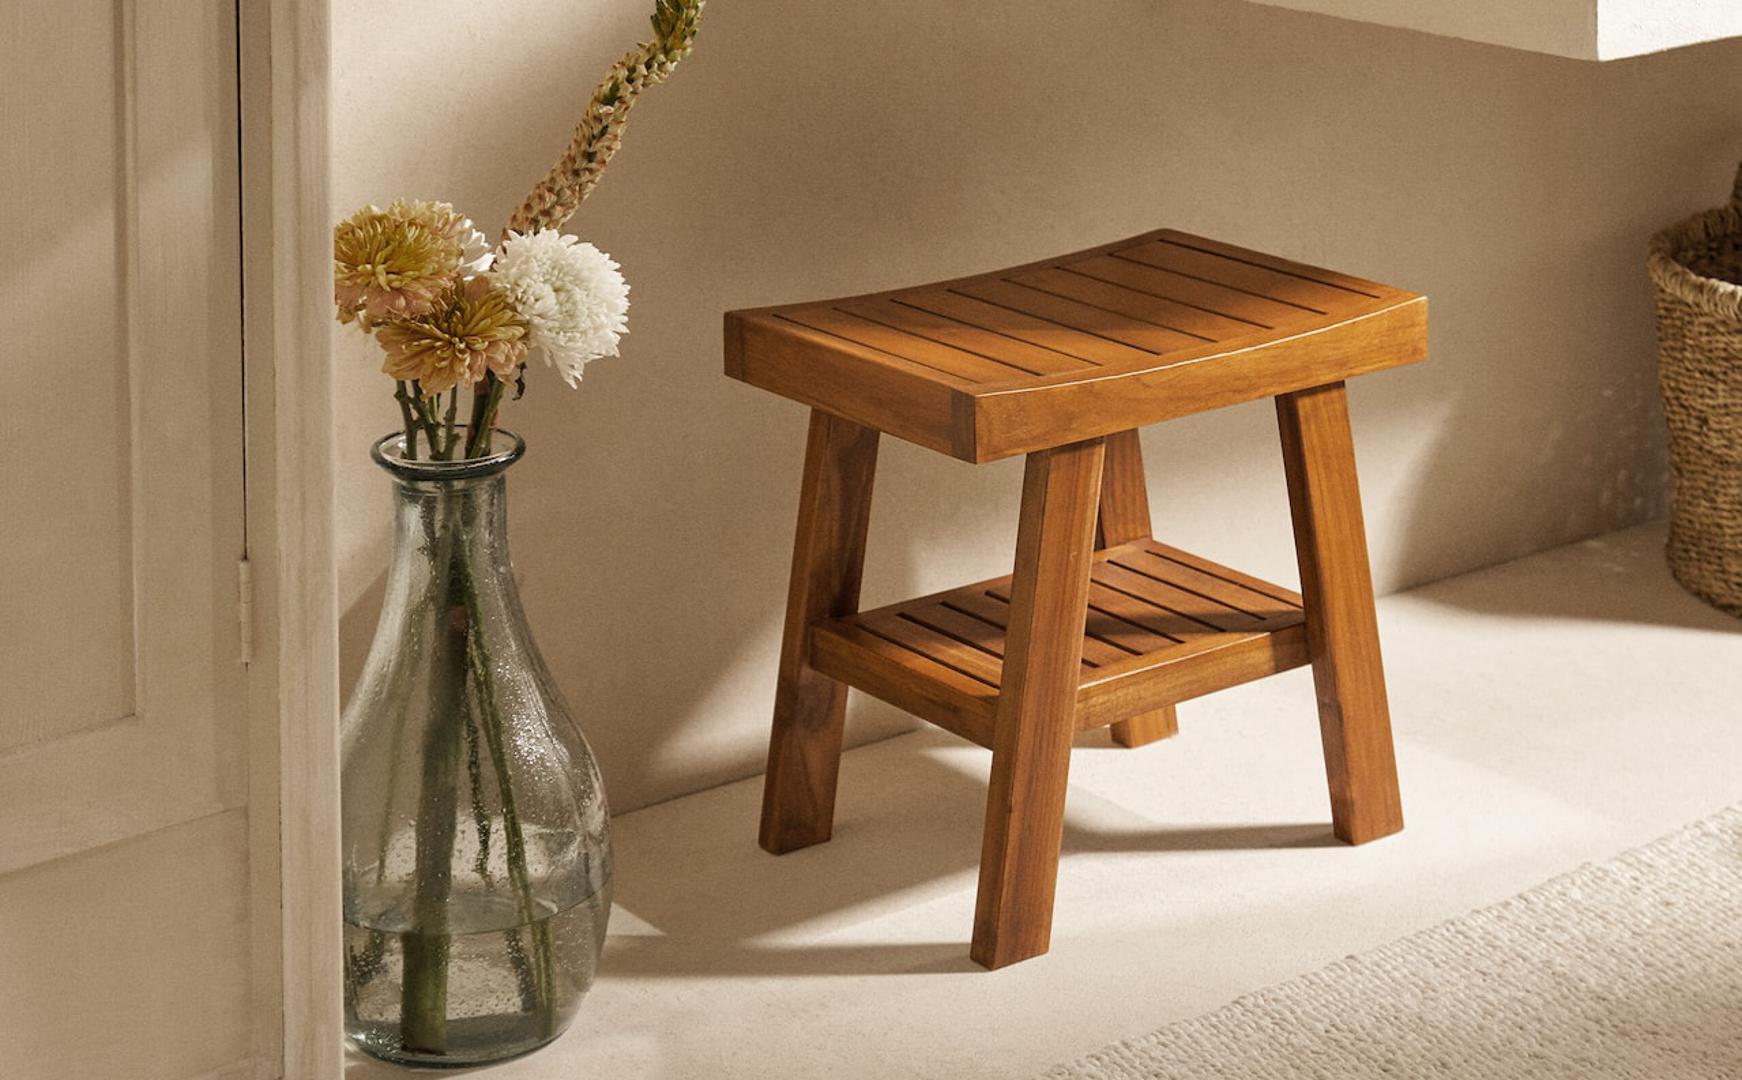 Praktičan drveni stolac možete staviti u tuš ako želite duže uživati ispod tuša (799 kn)